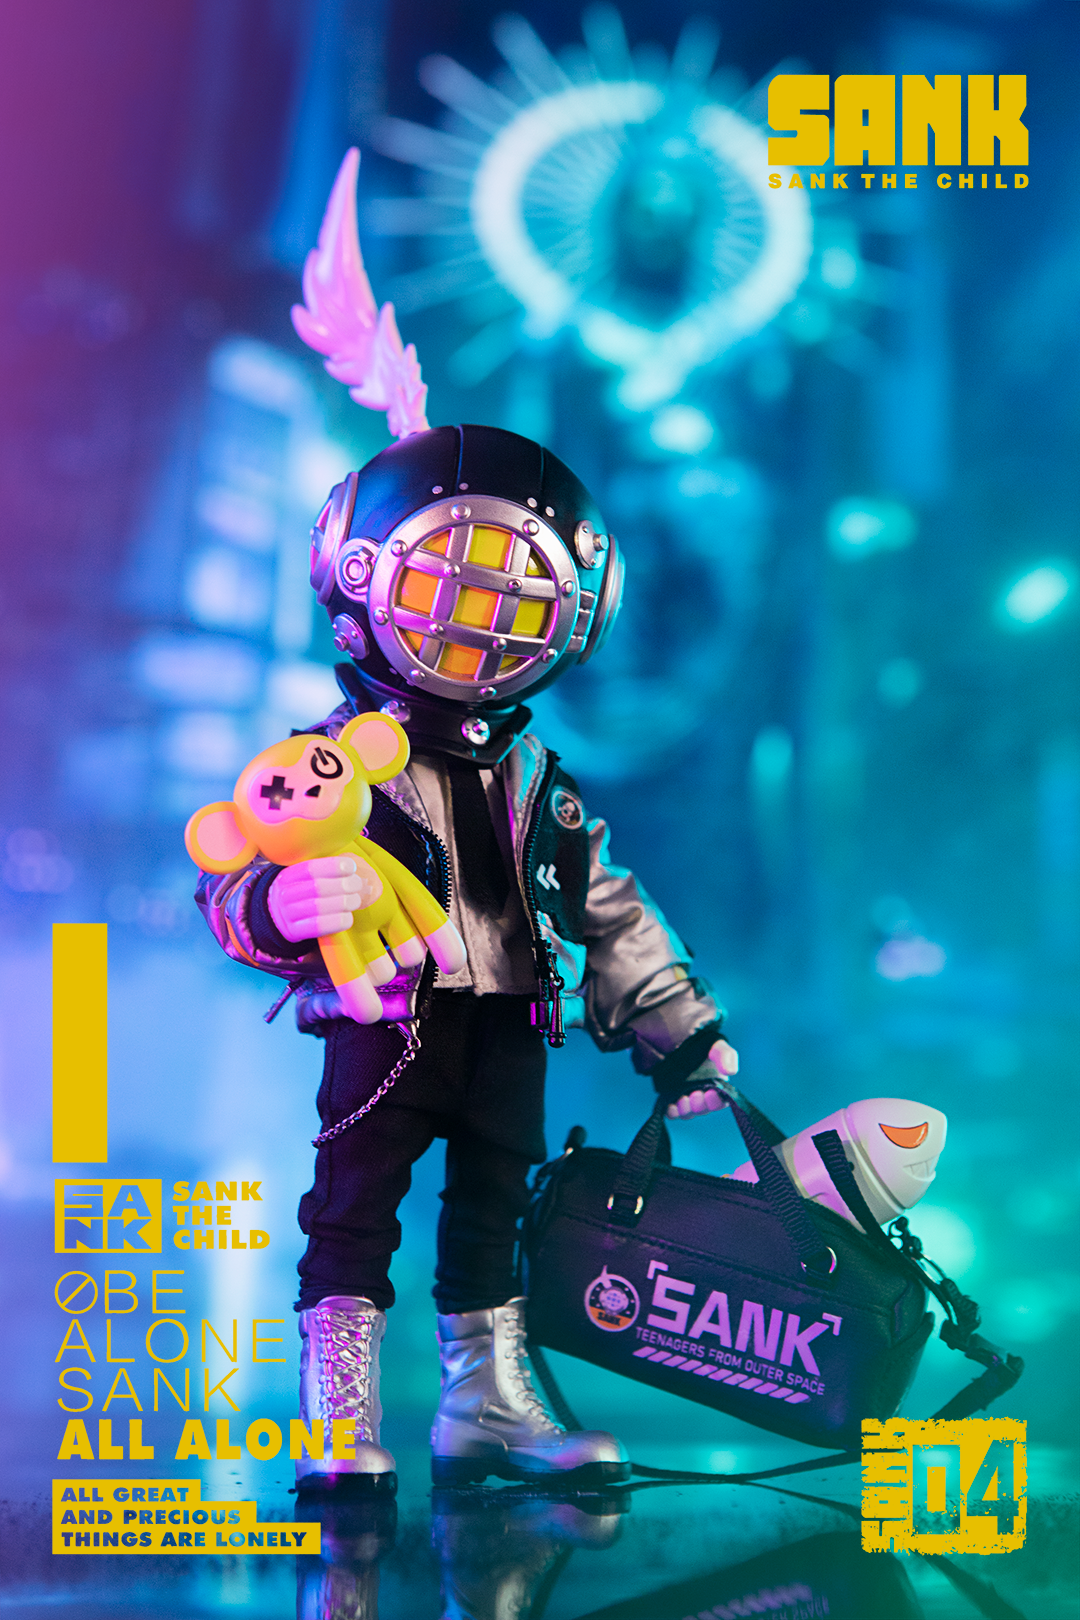 Retro Boy & Future Boy Action Figure Release Details by Sank Toys